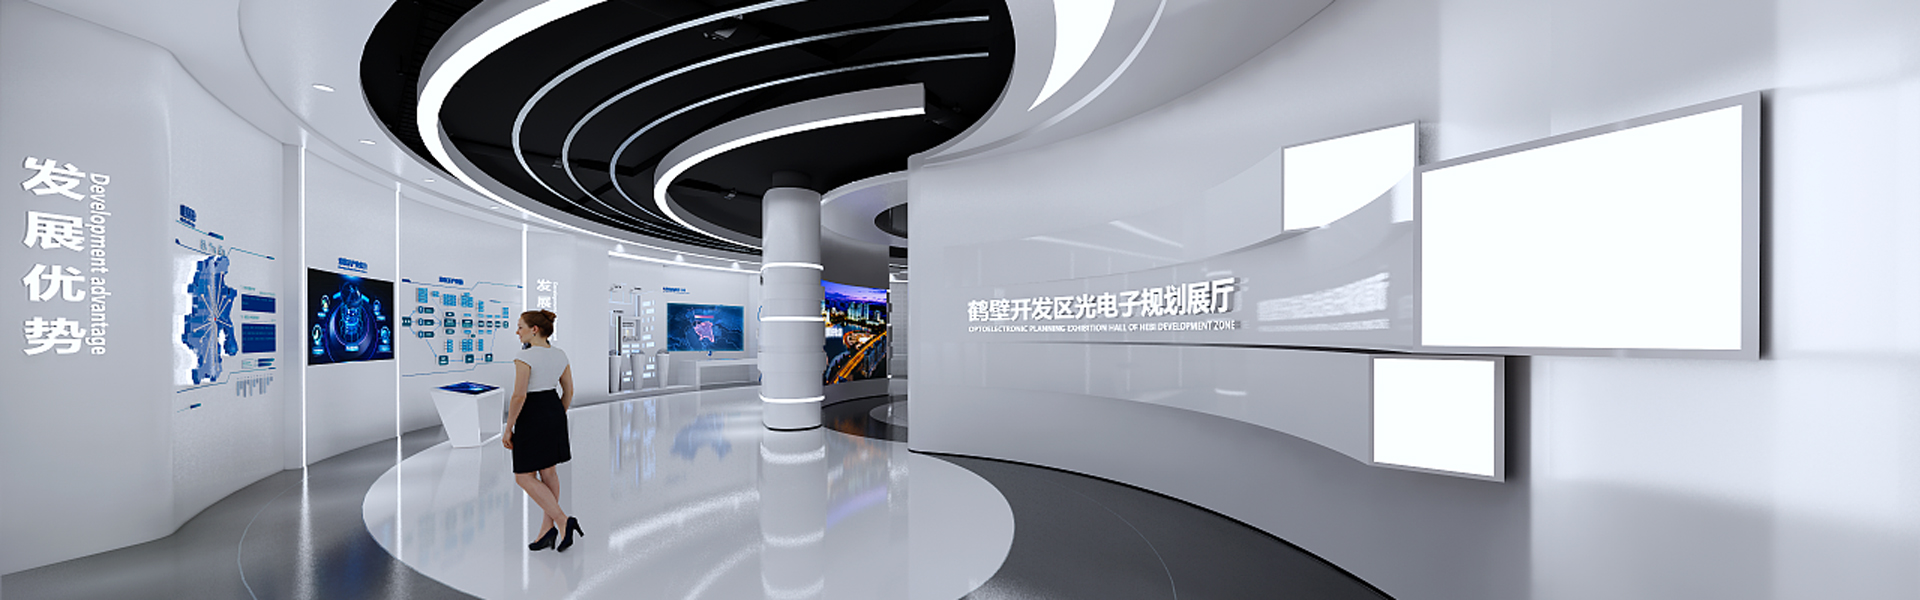 广州大数据中心展厅设计方案